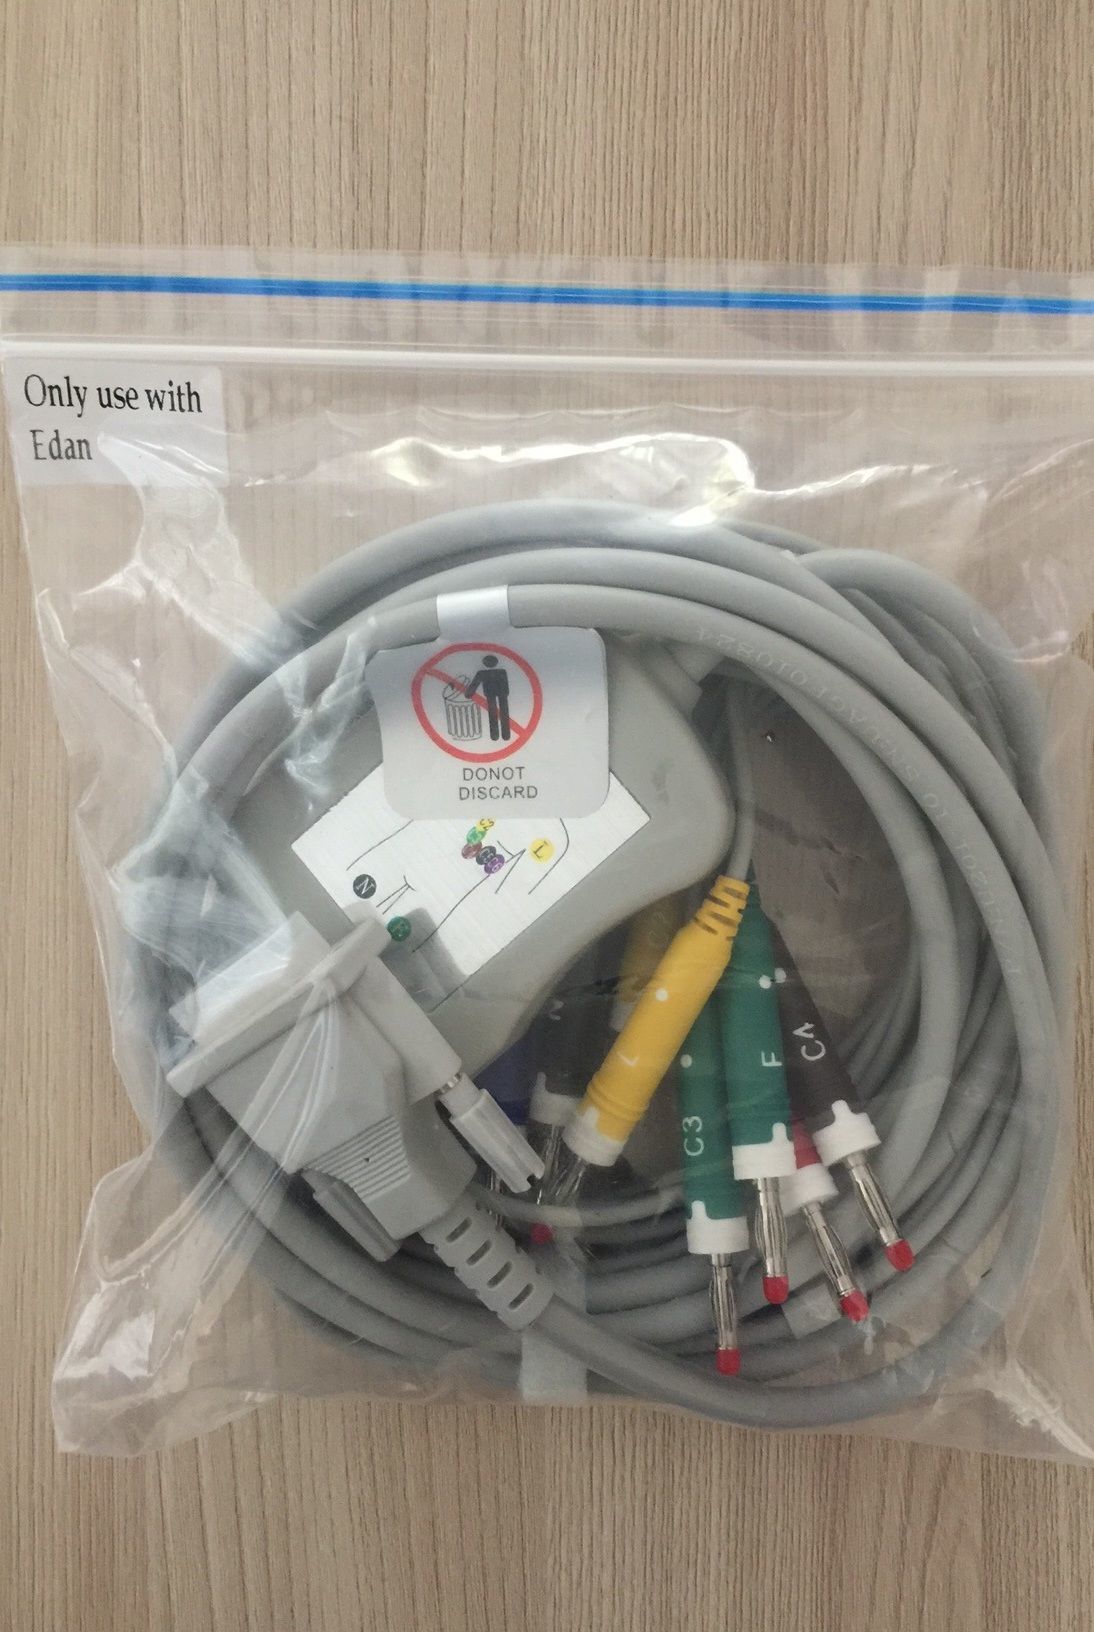 EKG Lead wires cable for EDAN SE-1200_สายอีเคจีสำหรับเครื่องบันทึกคลื่นหัวใจไฟฟ้า อีดาน EDAN SE-1200